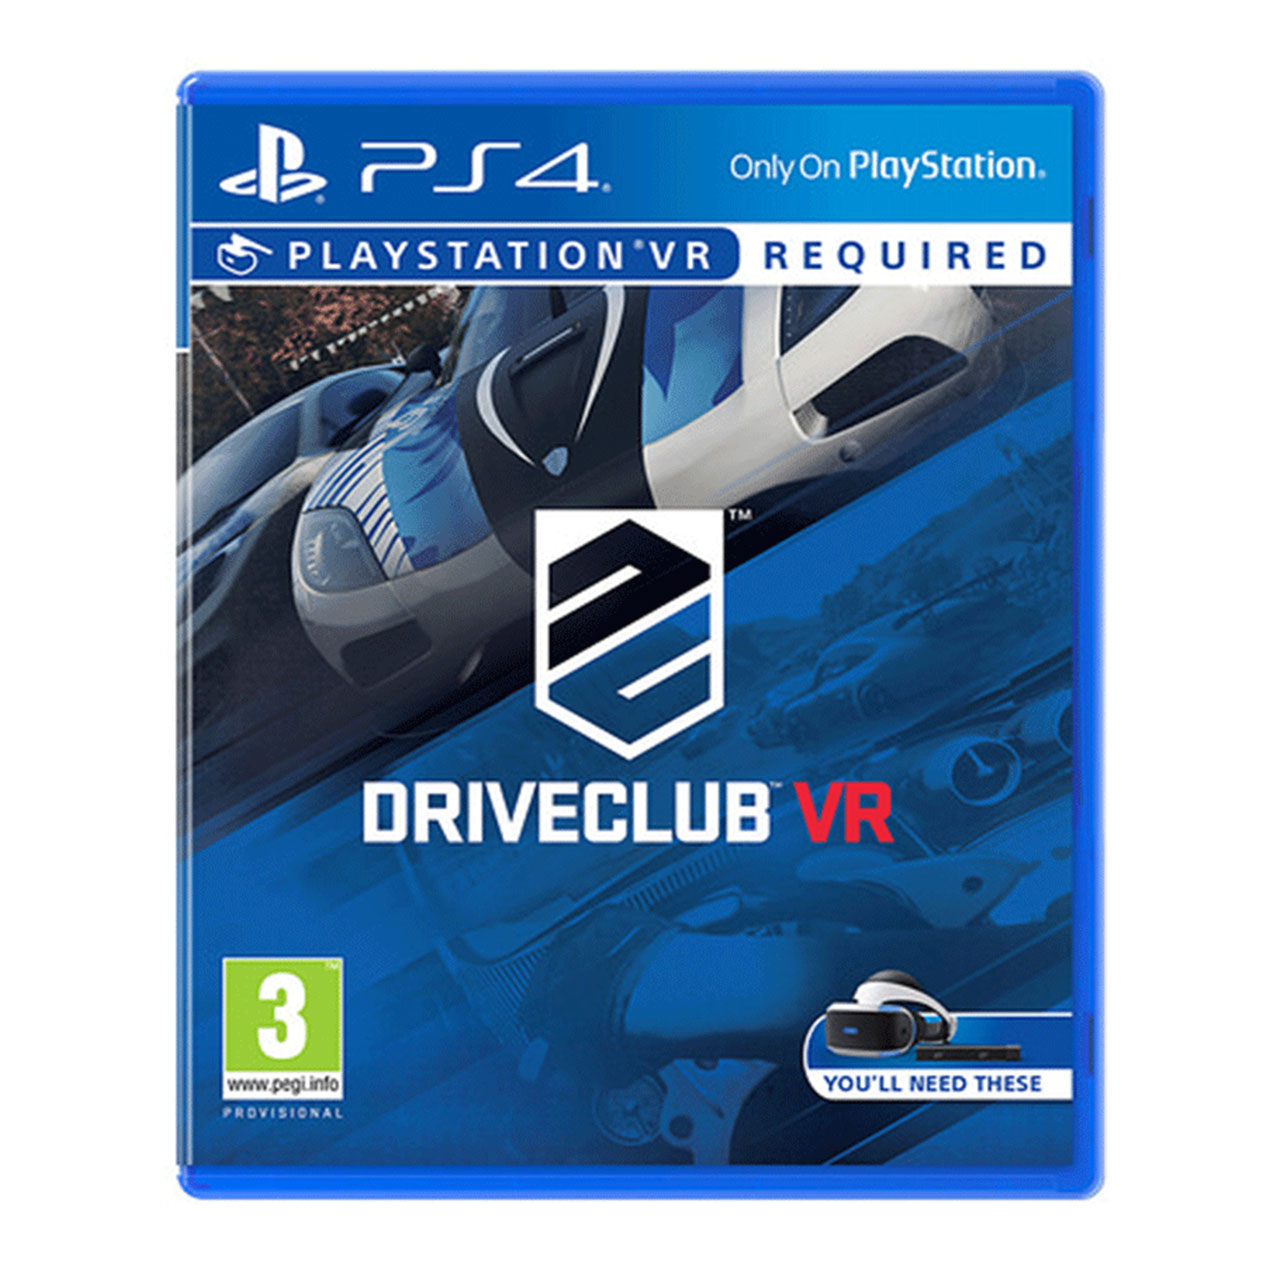 نکته خرید - قیمت روز بازی Drive Club VR مخصوص PS4 خرید